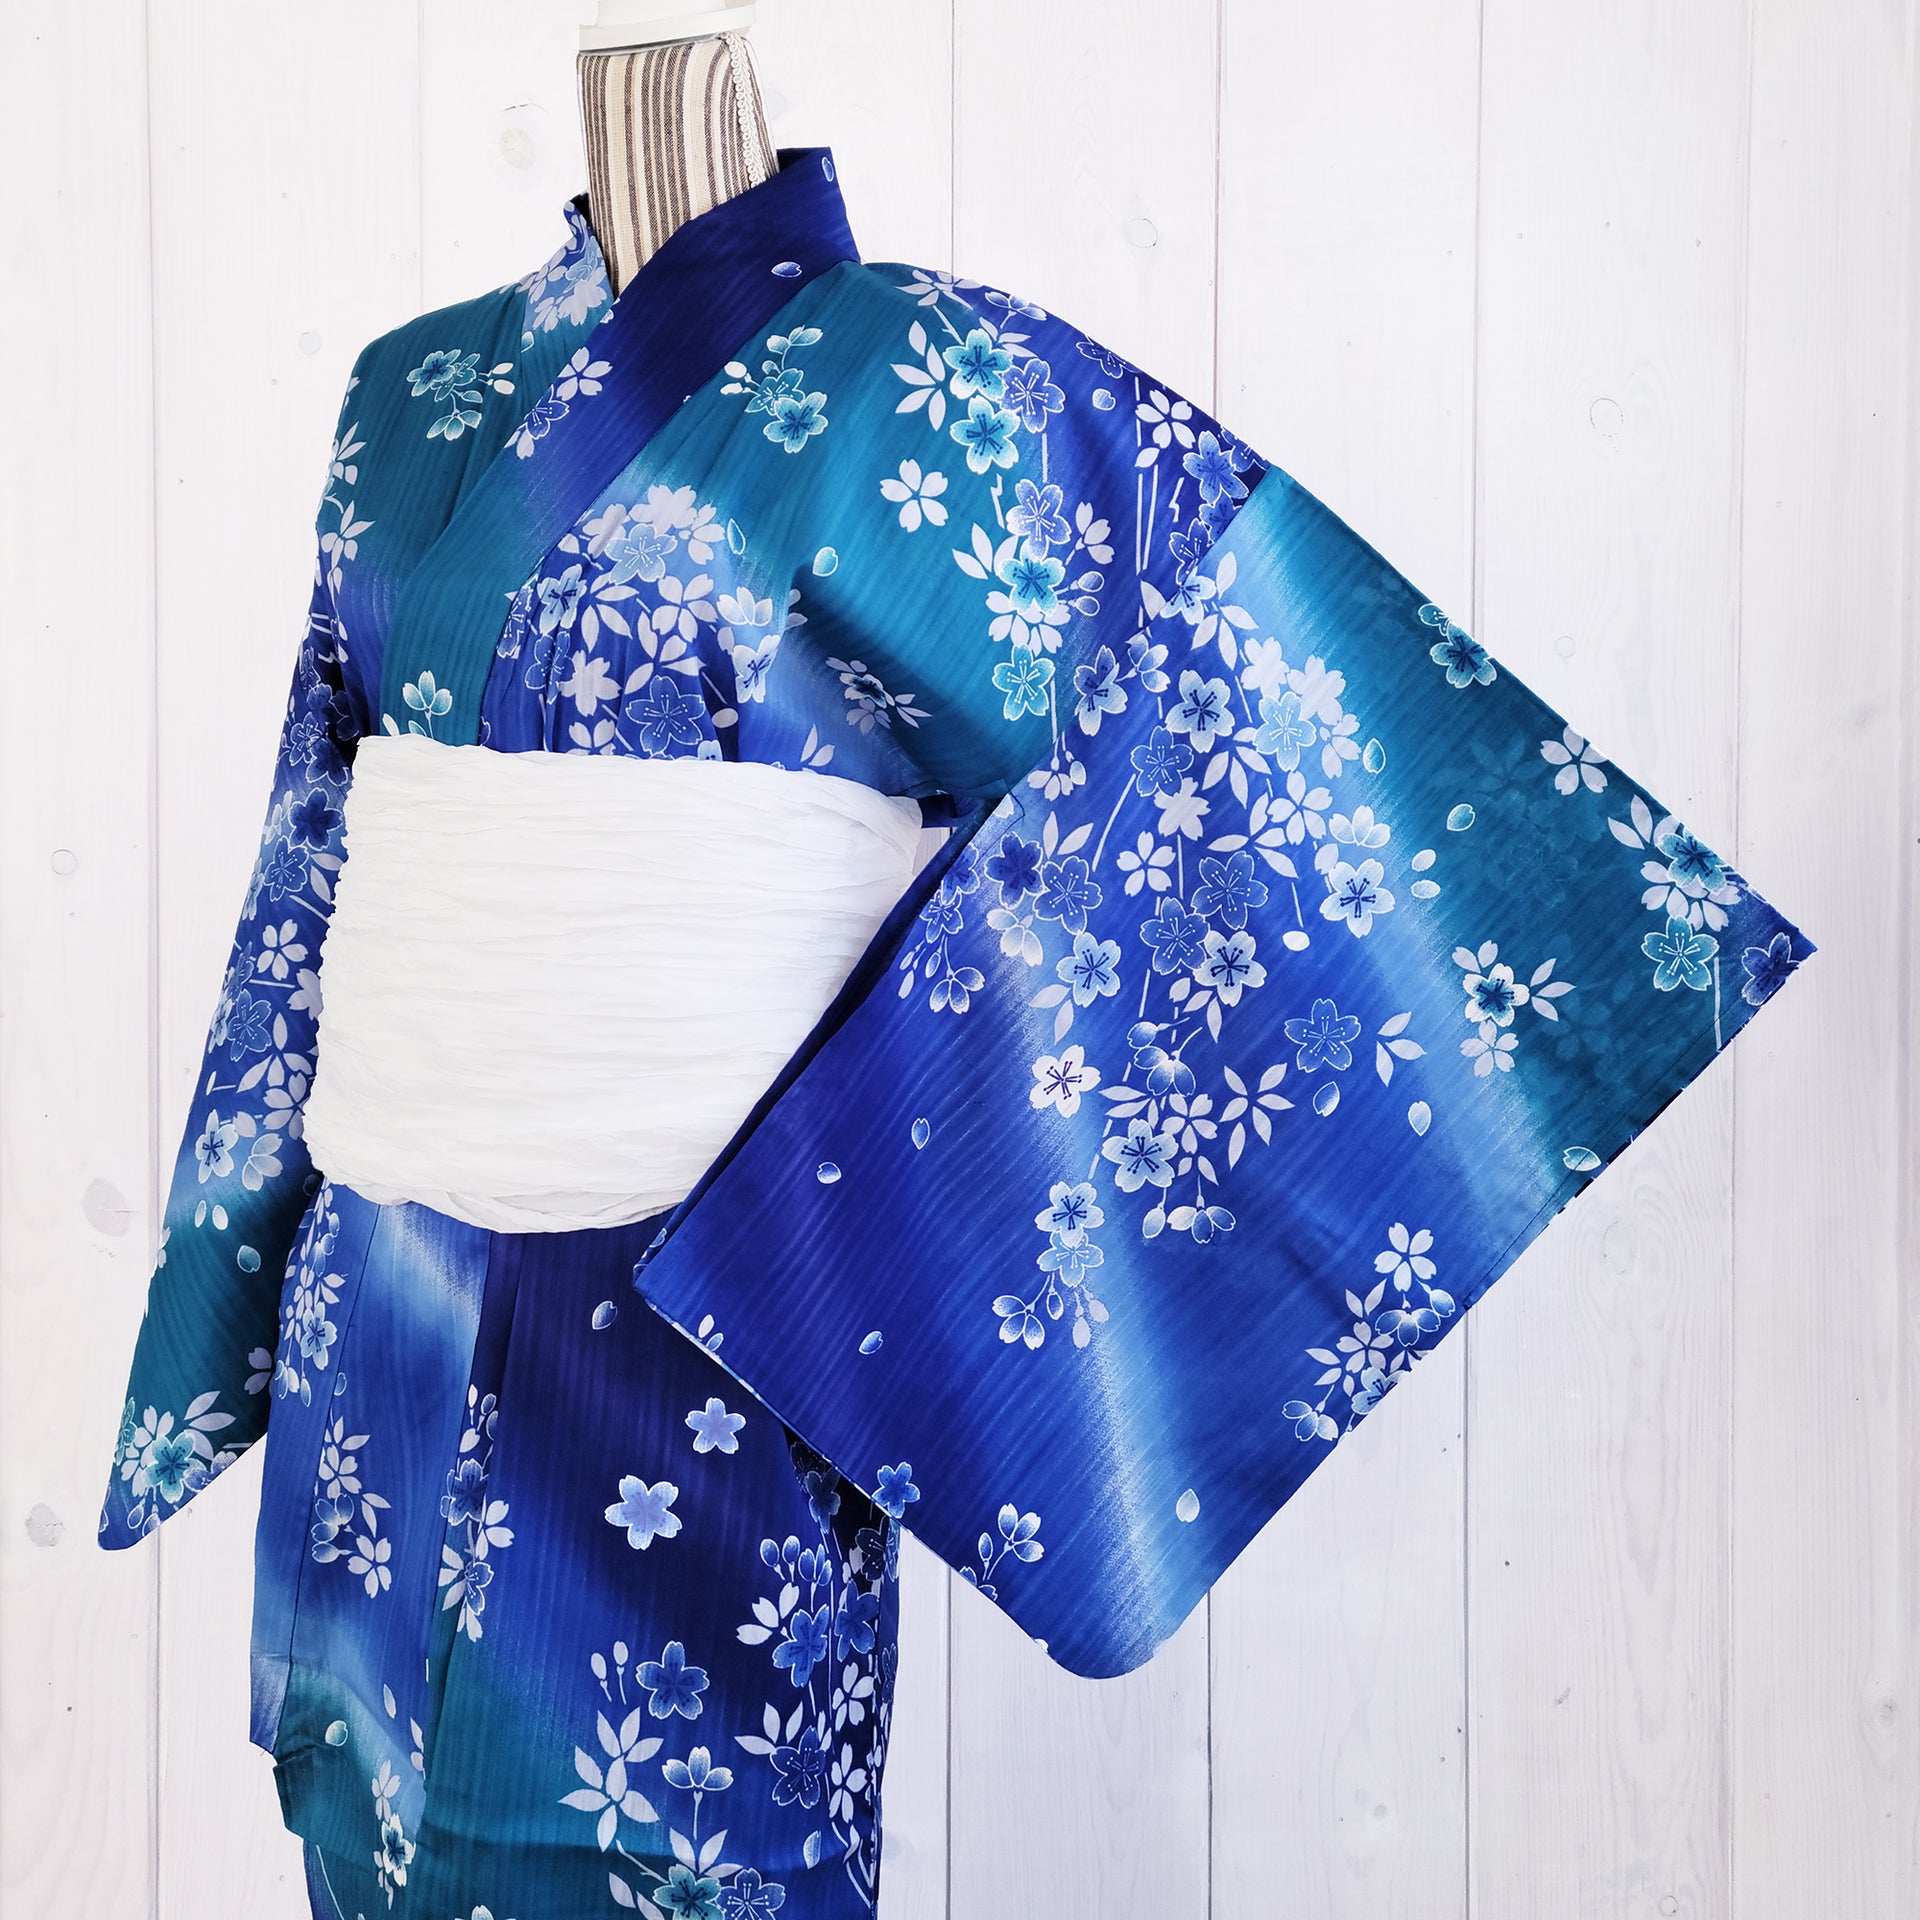 KimonoPaint Japanese Cherry Blossom Blue Racerback Moisture